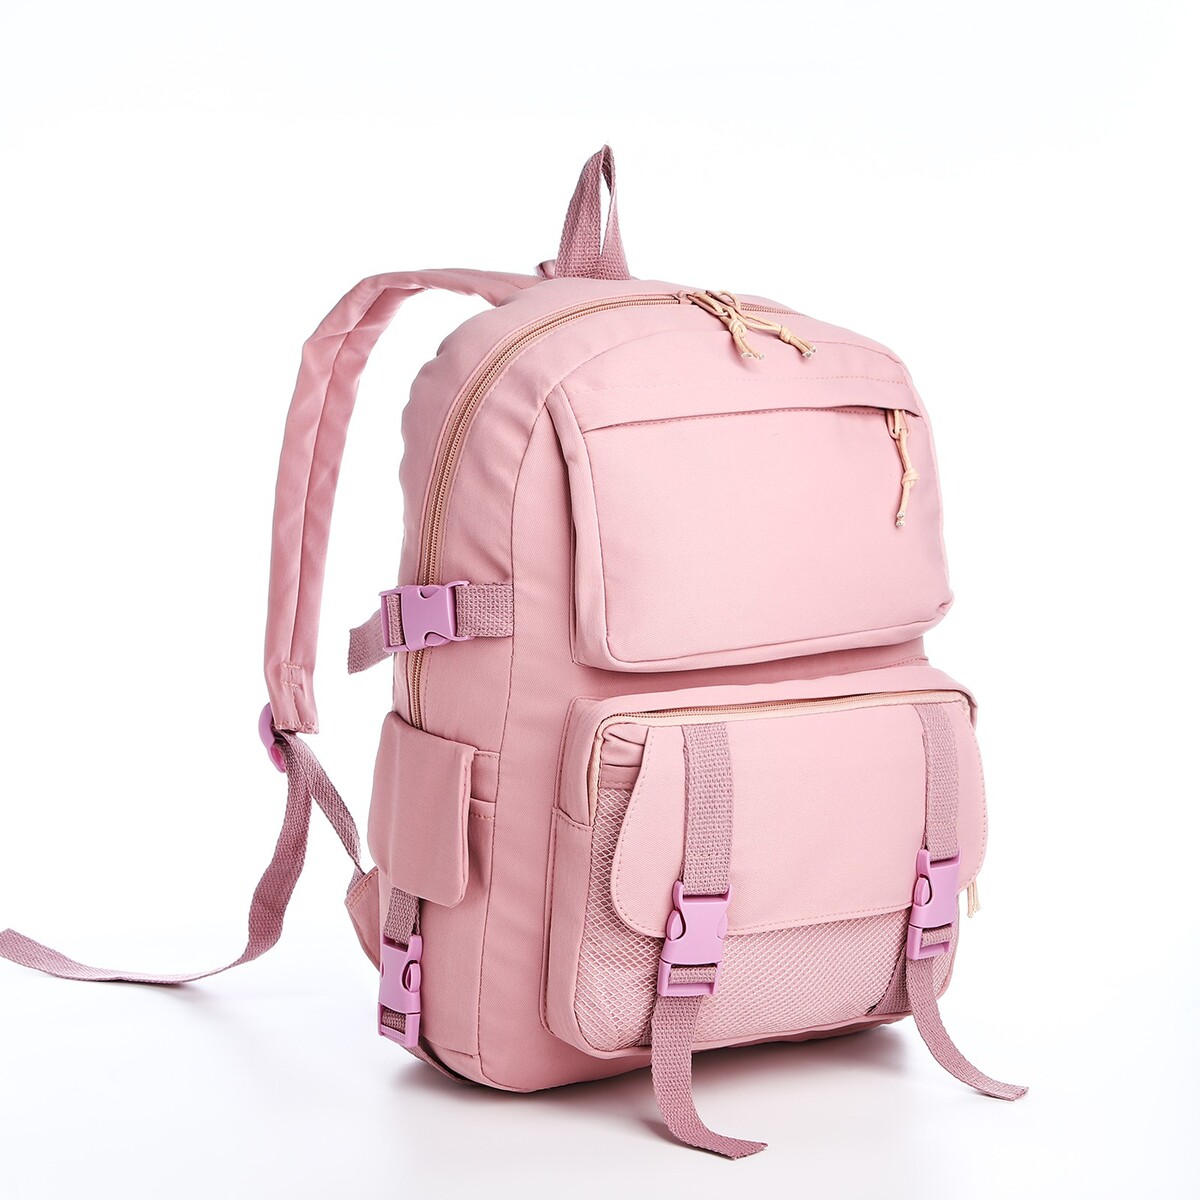 Рюкзак, отдел на молнии, 2 наружных кармана, 2 боковых кармана, цвет розовый рюкзак отдел на молнии 2 наружных кармана розовый